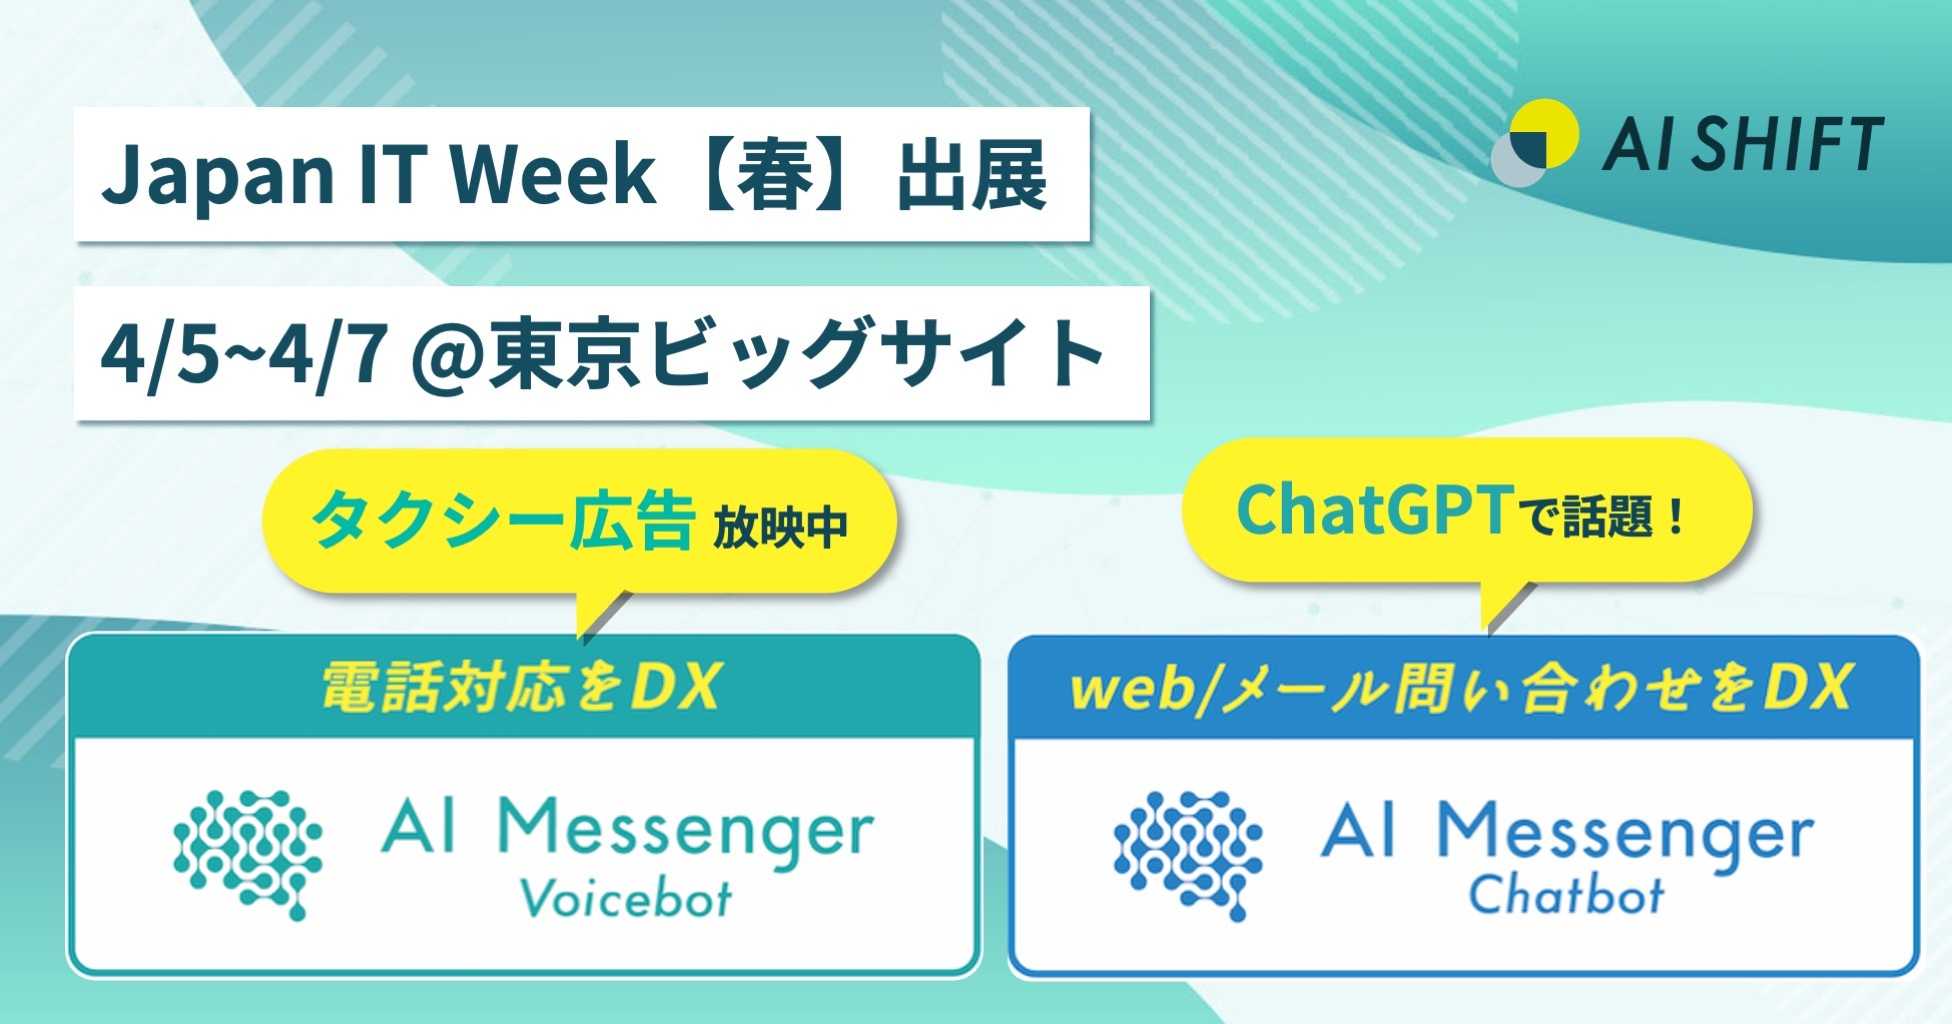 株式会社AI Shift、電話対応を自動化する「AI Messenger Voicebot」について、本日より開催されるJapan IT Week【春】に出展します 〜ChatGPTに関するご質問もお気軽にご相談いただけます〜